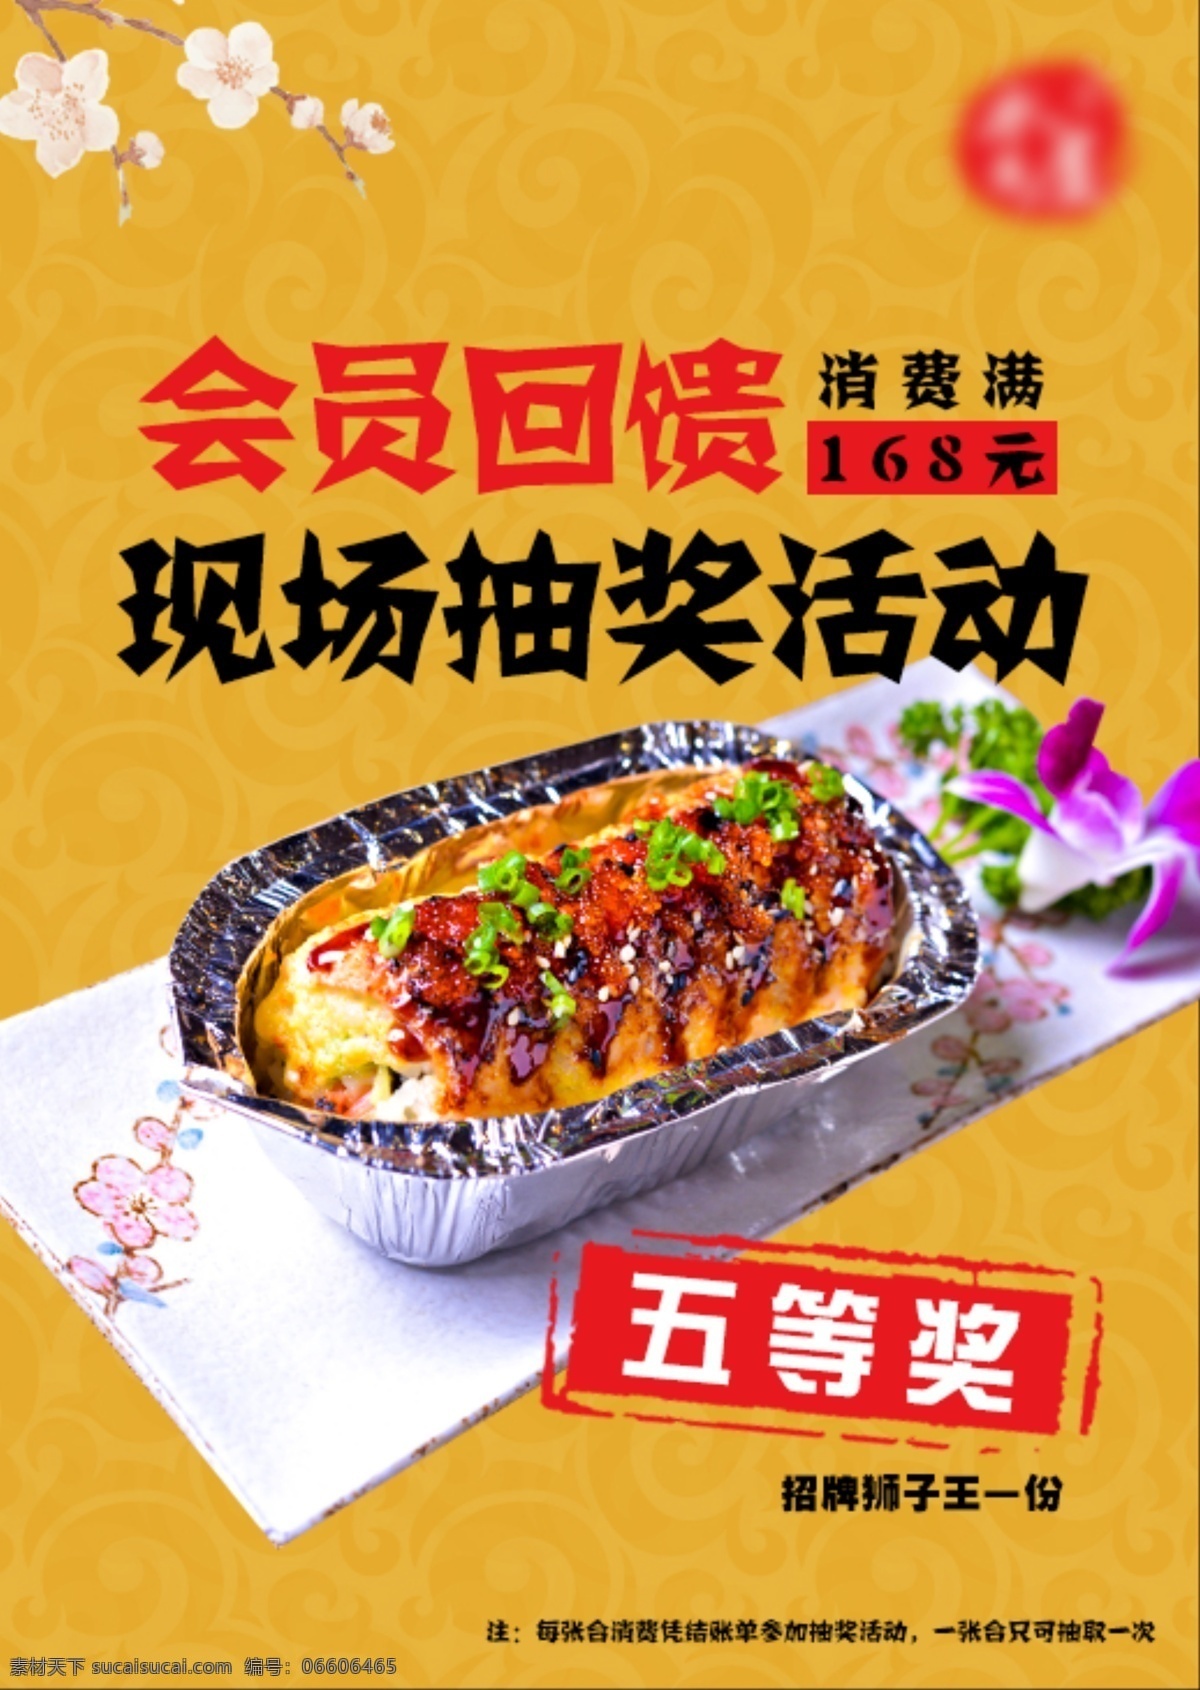 餐饮 抽奖 海报 展示 抽奖海报 餐饮海报 促销 优惠 寿司 饮食海报 黄色